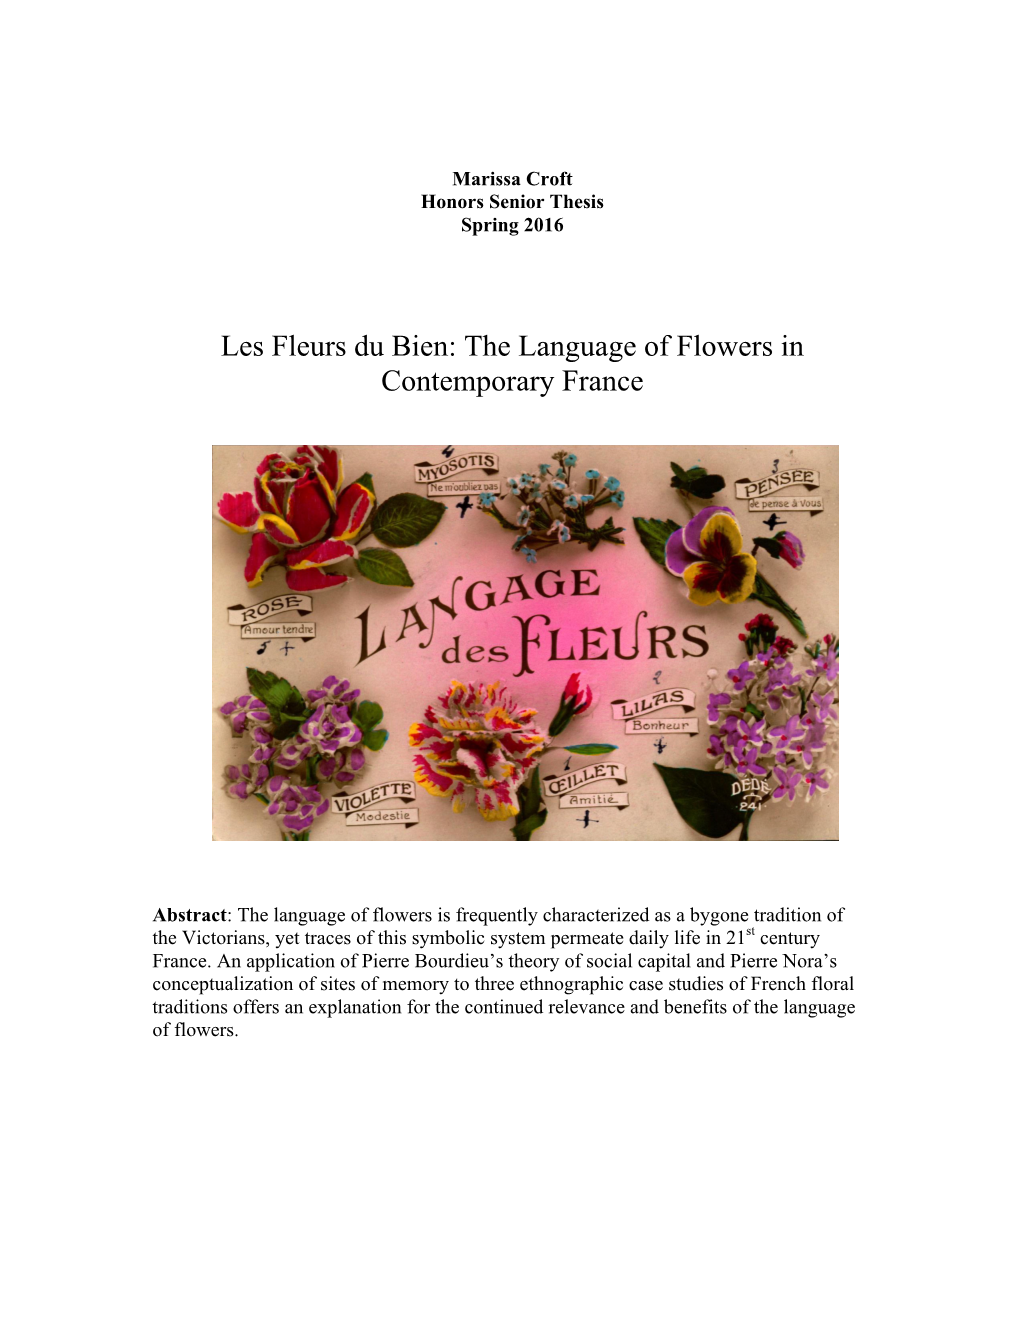 Les Fleurs Du Bien: the Language of Flowers in Contemporary France